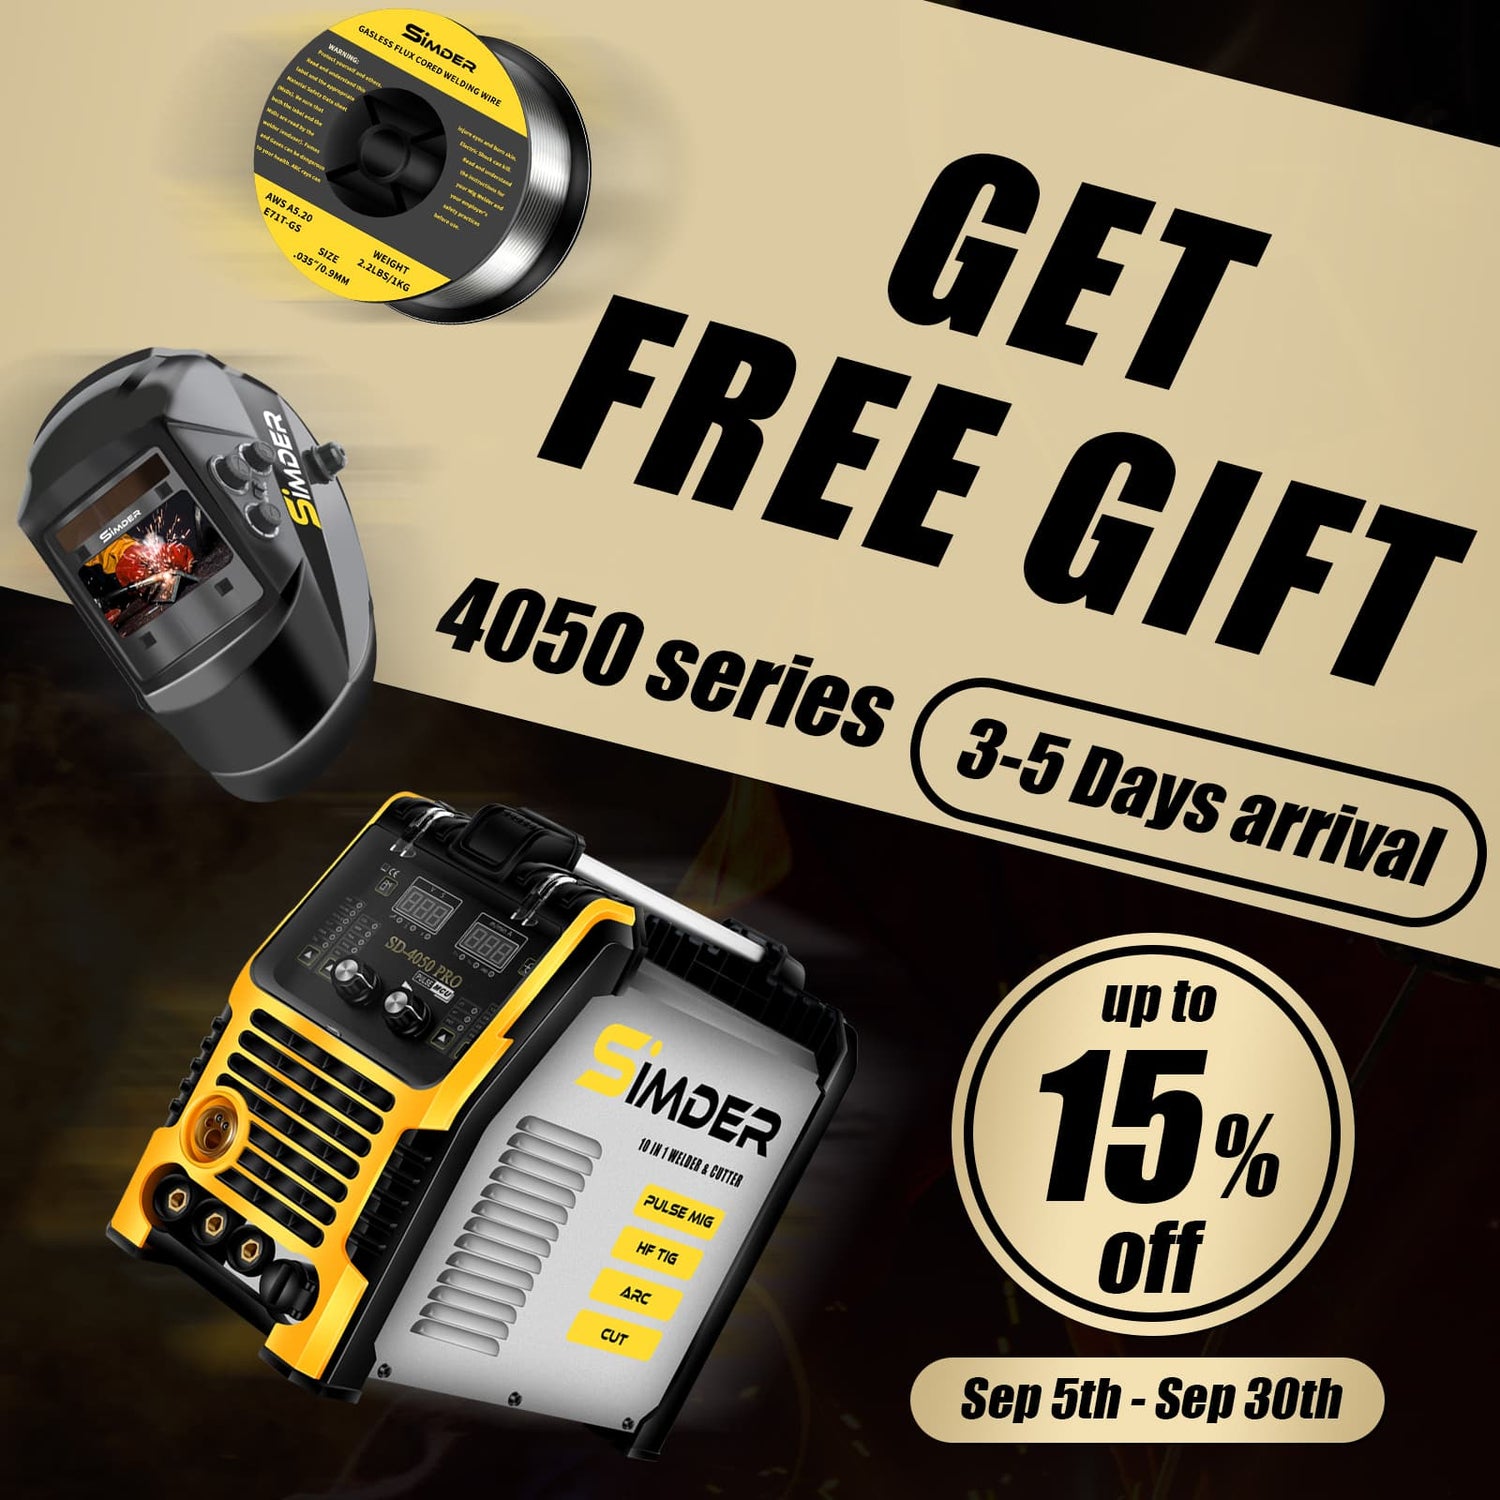 SSimder buy 4050 series welder get free gift